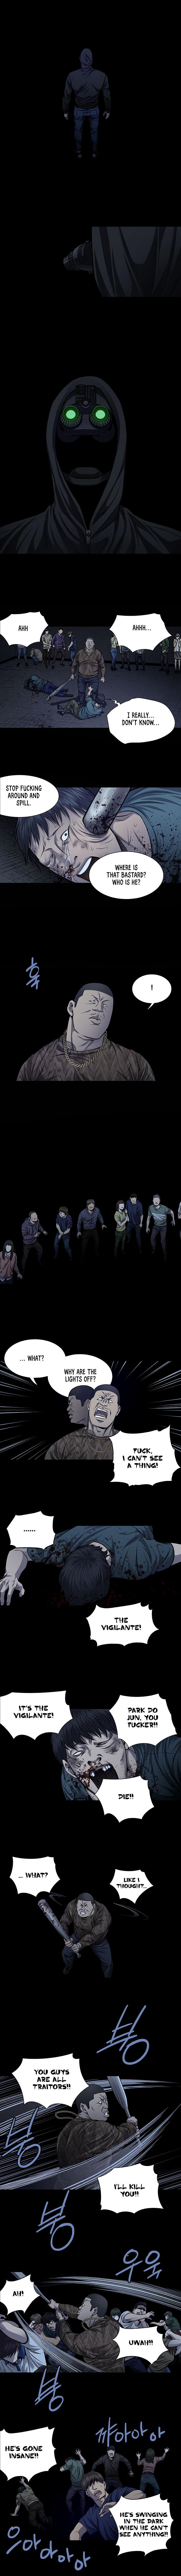 Vigilante - Chapter 29 Page 2